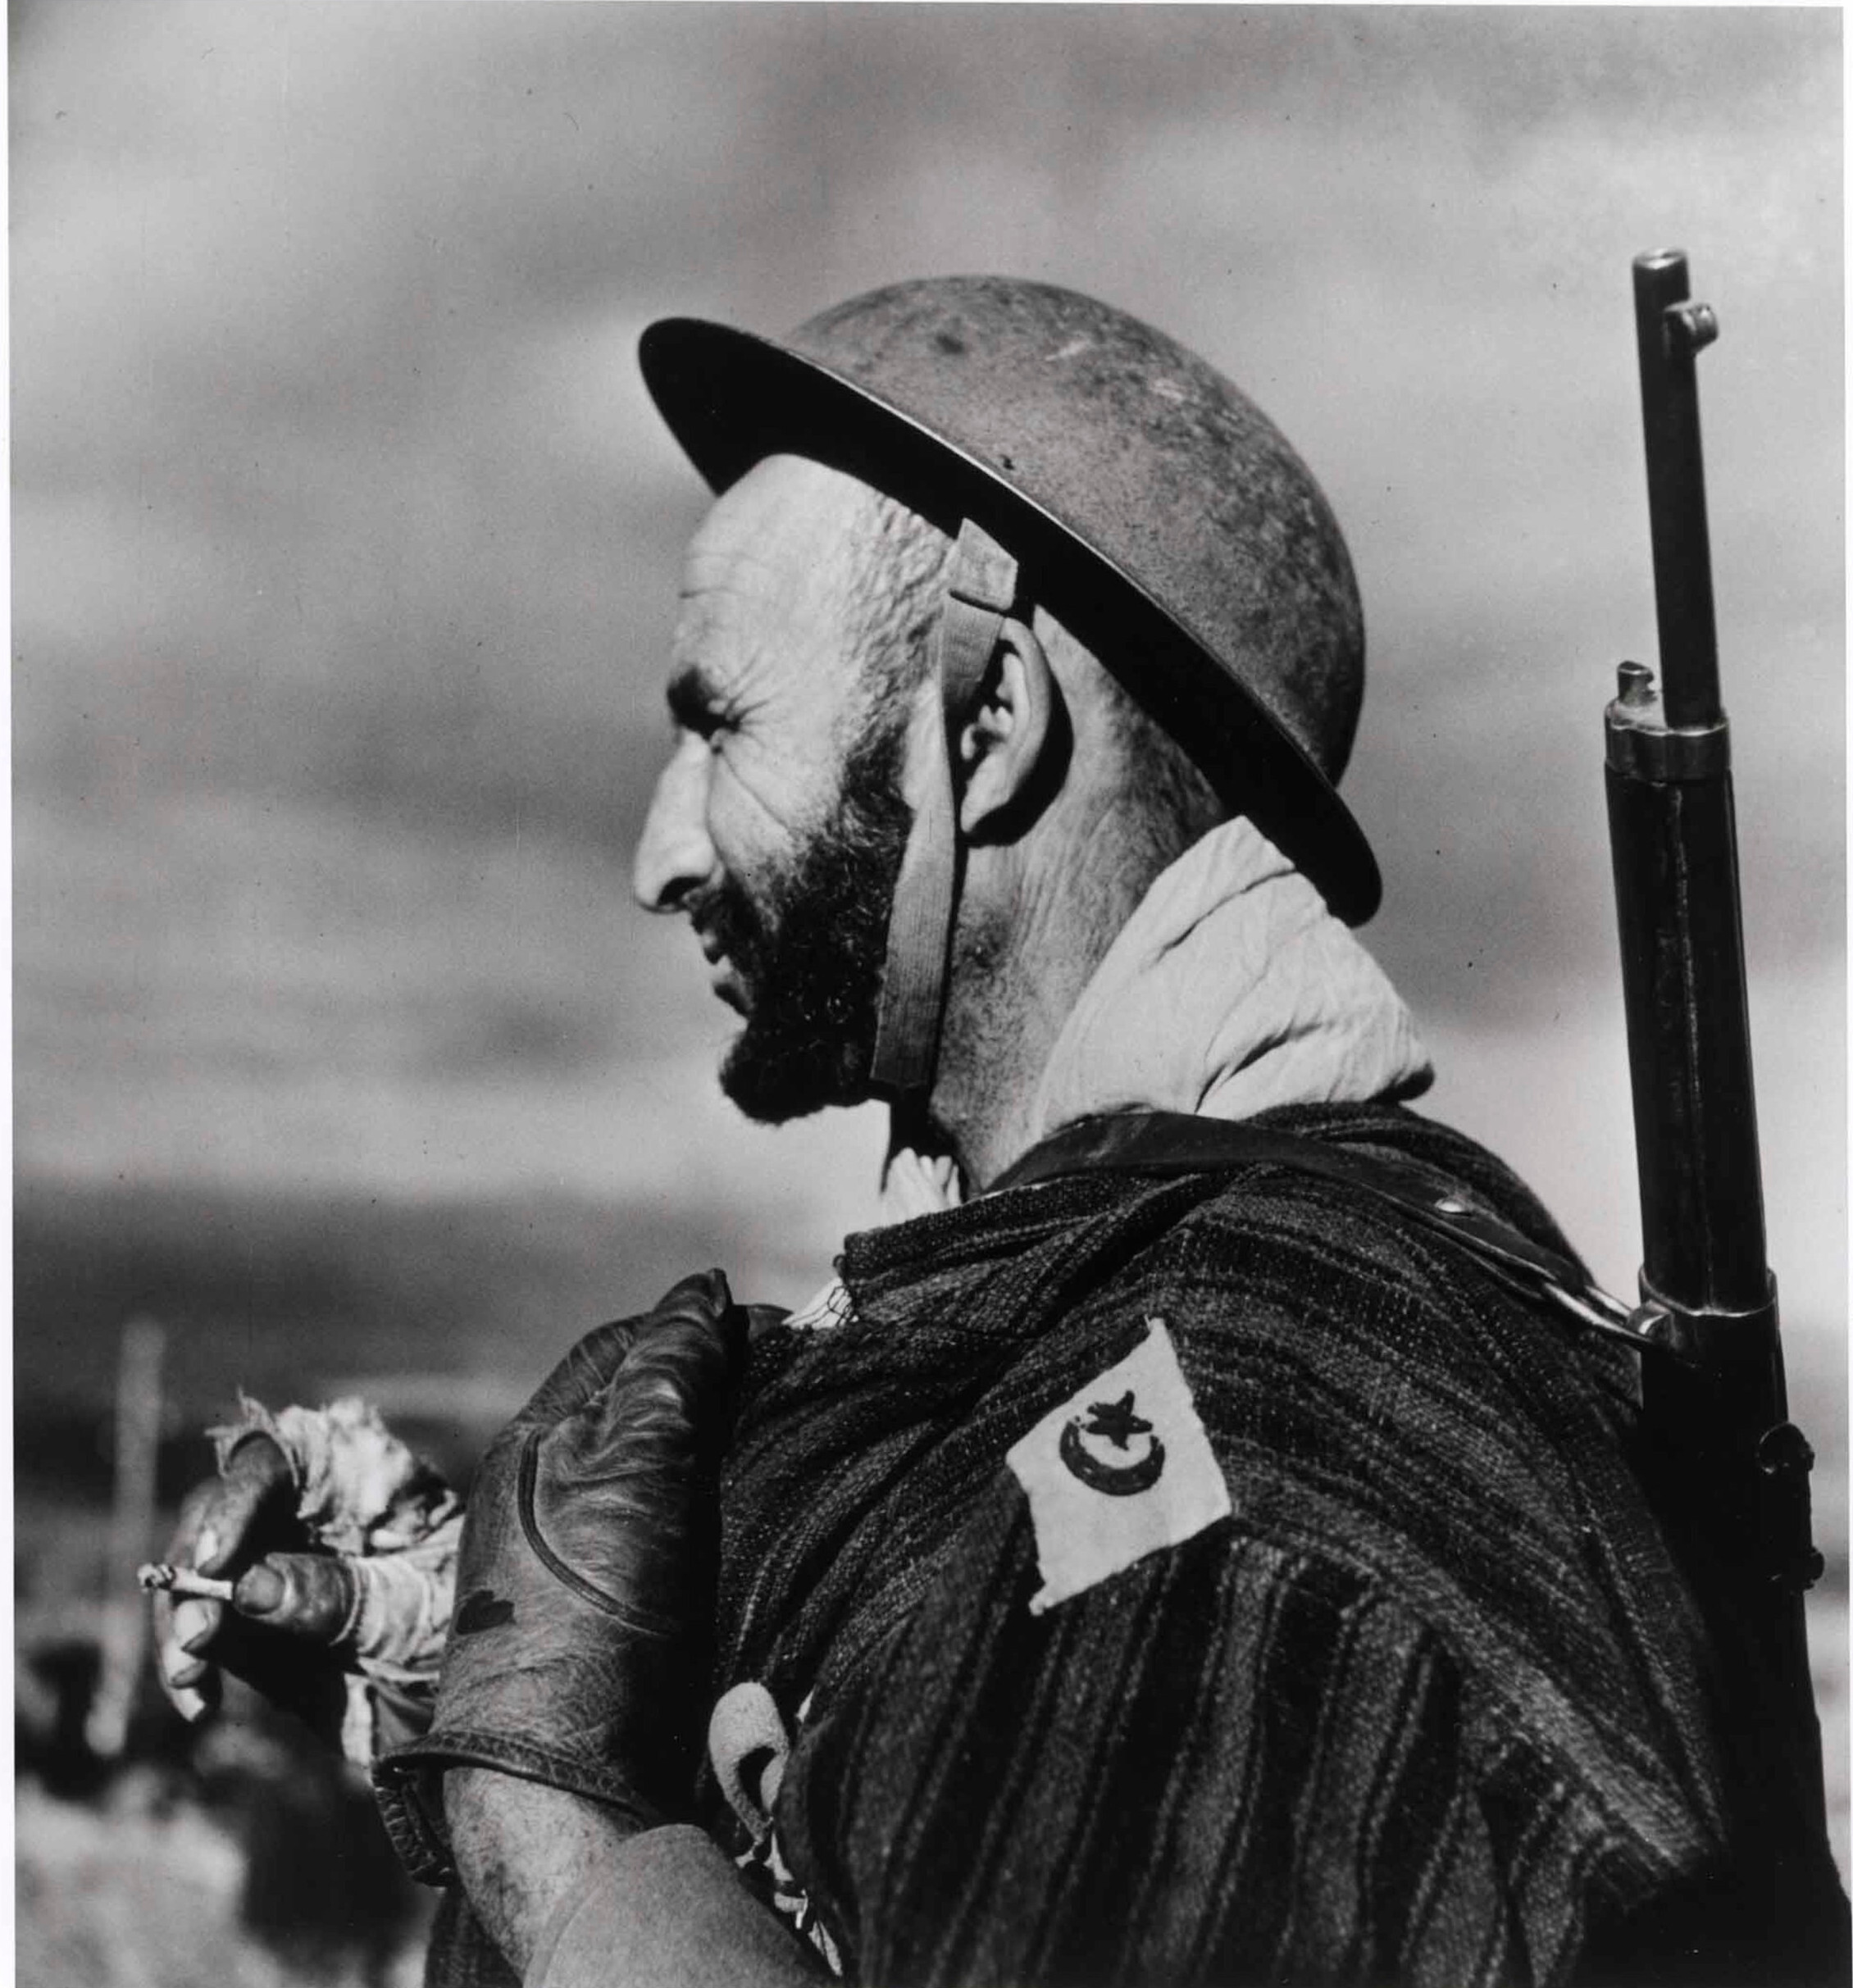 Солдат 2-й марокканской пехотной дивизии, недалеко от горы Пантано, к северо-востоку от Кассино, Италия, декабрь 1943 года. Фотограф Роберт Капа